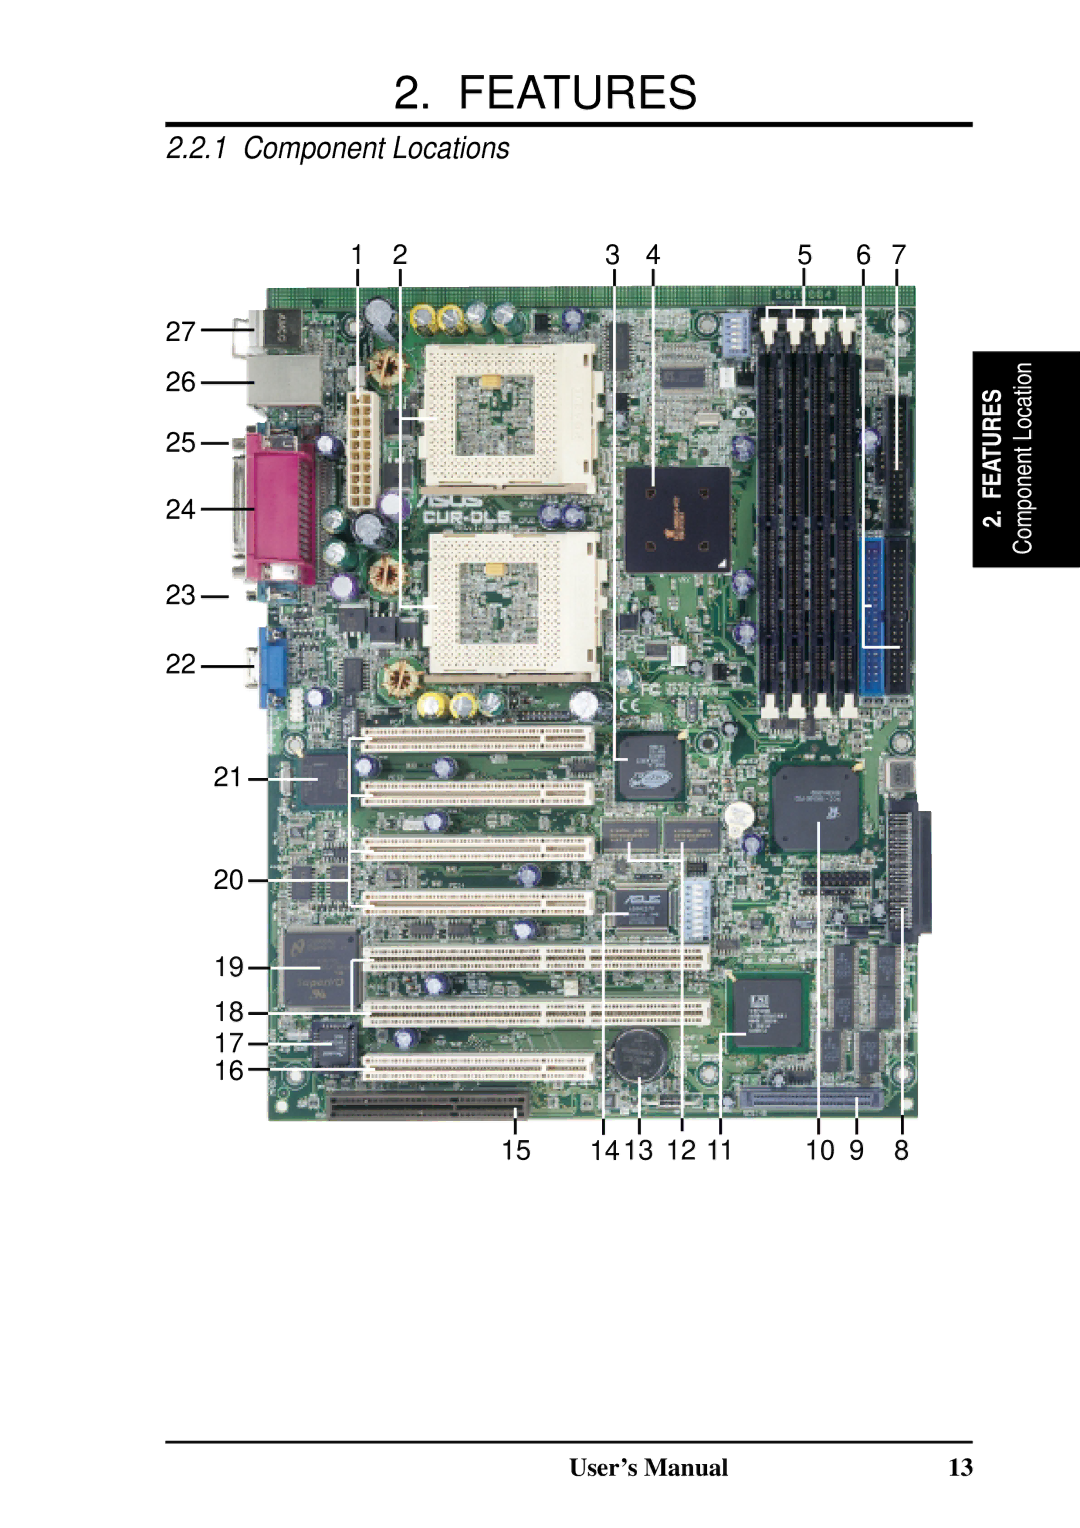 Fujitsu D1241 manual Component Locations 